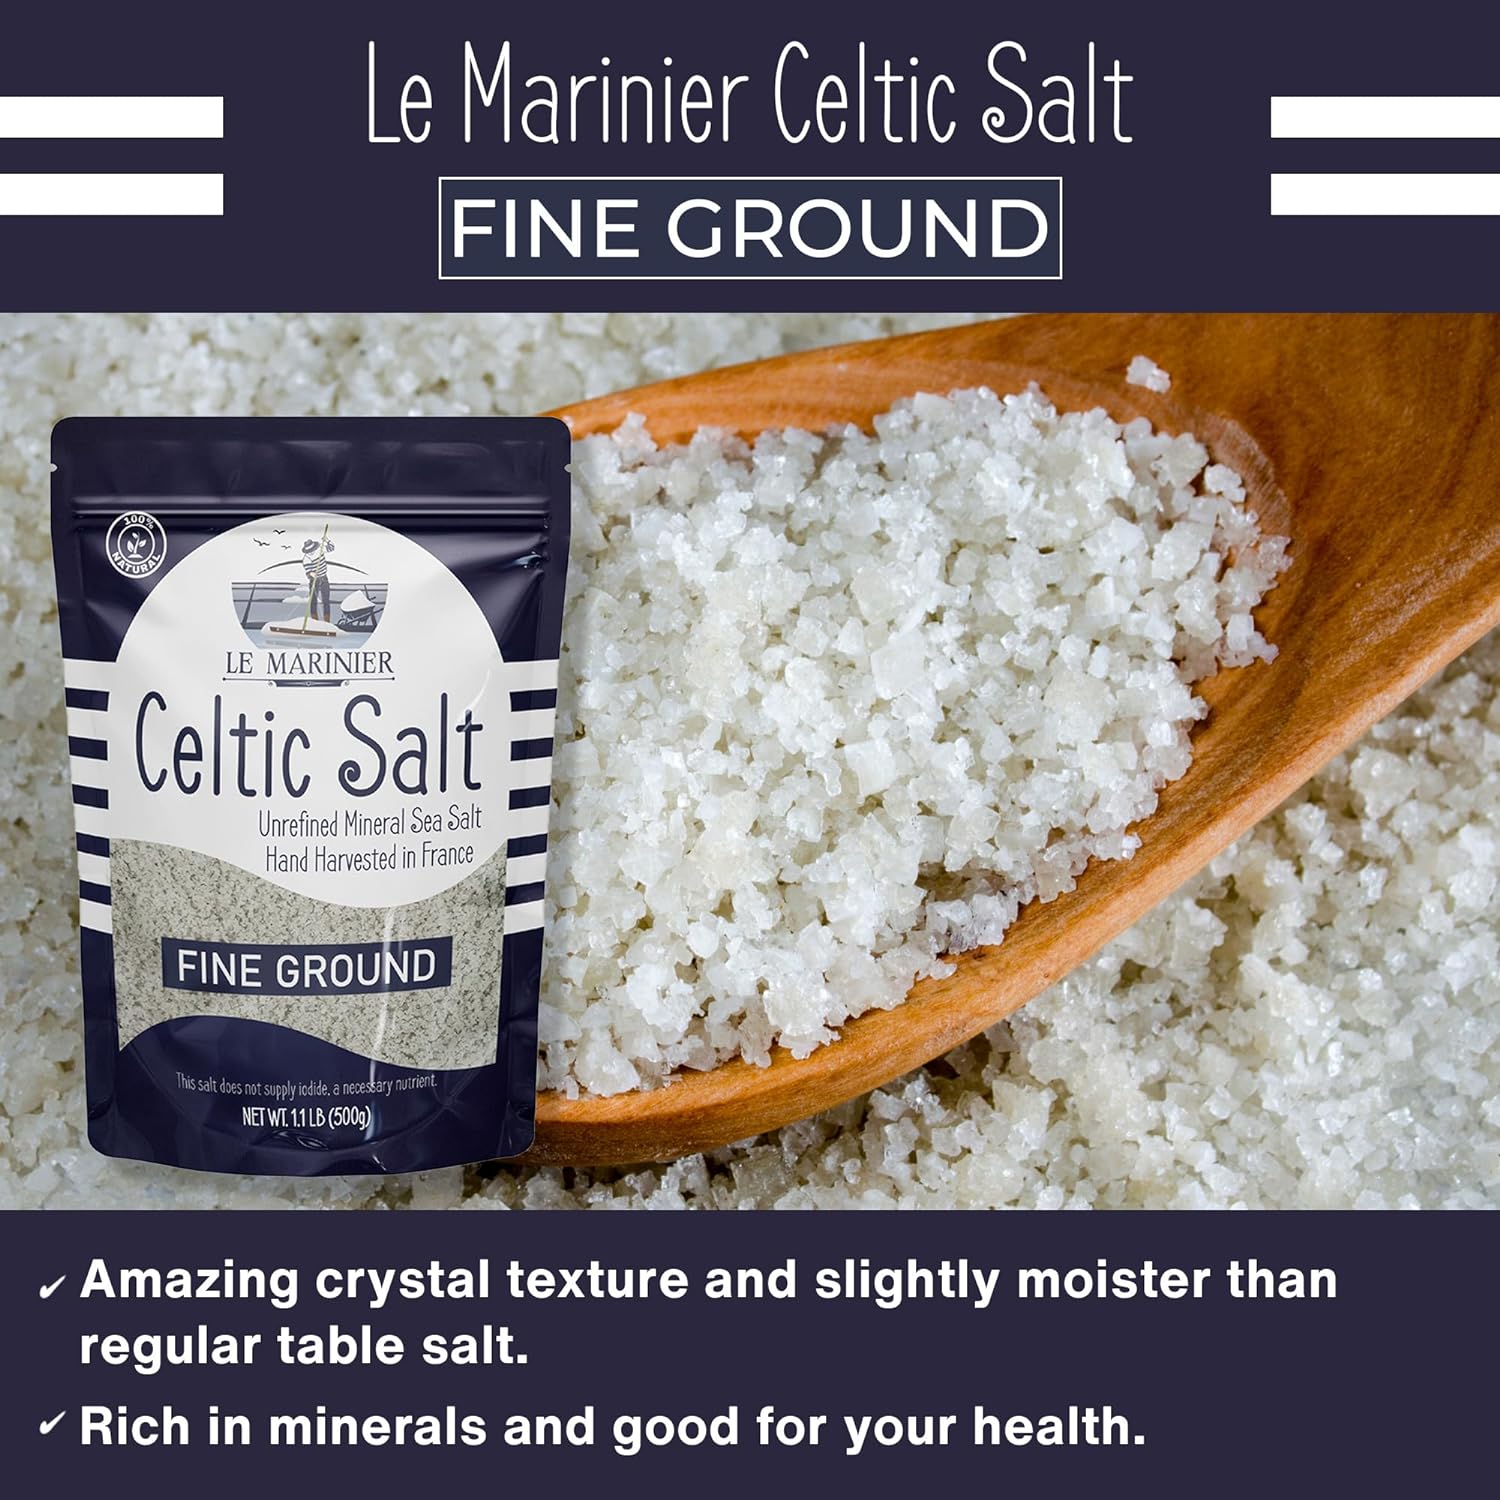 Fine Ground regular table salt